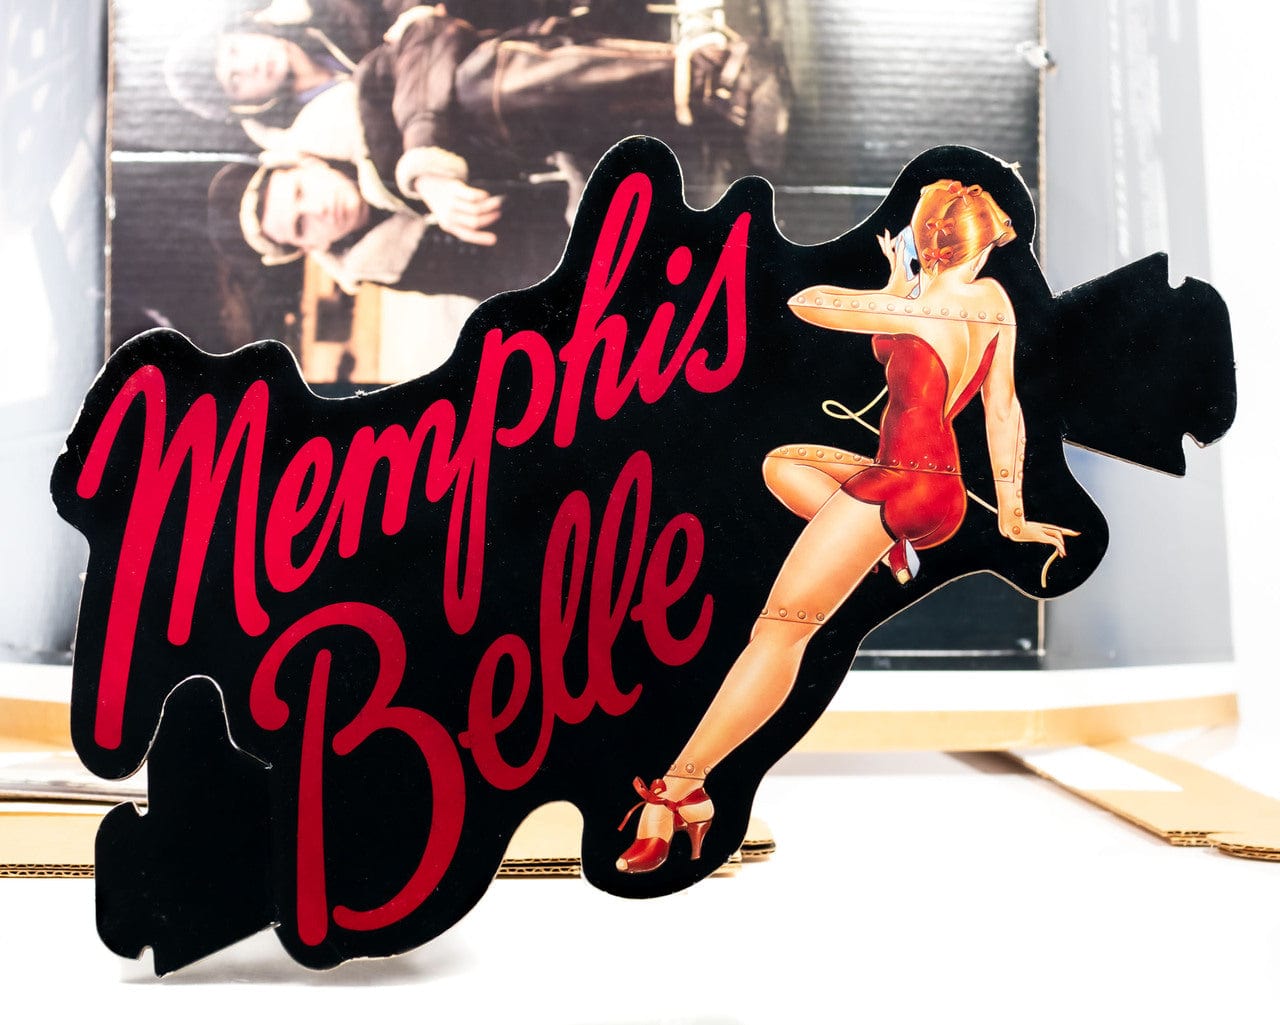 "Memphis Belle" Cardboard Display 2